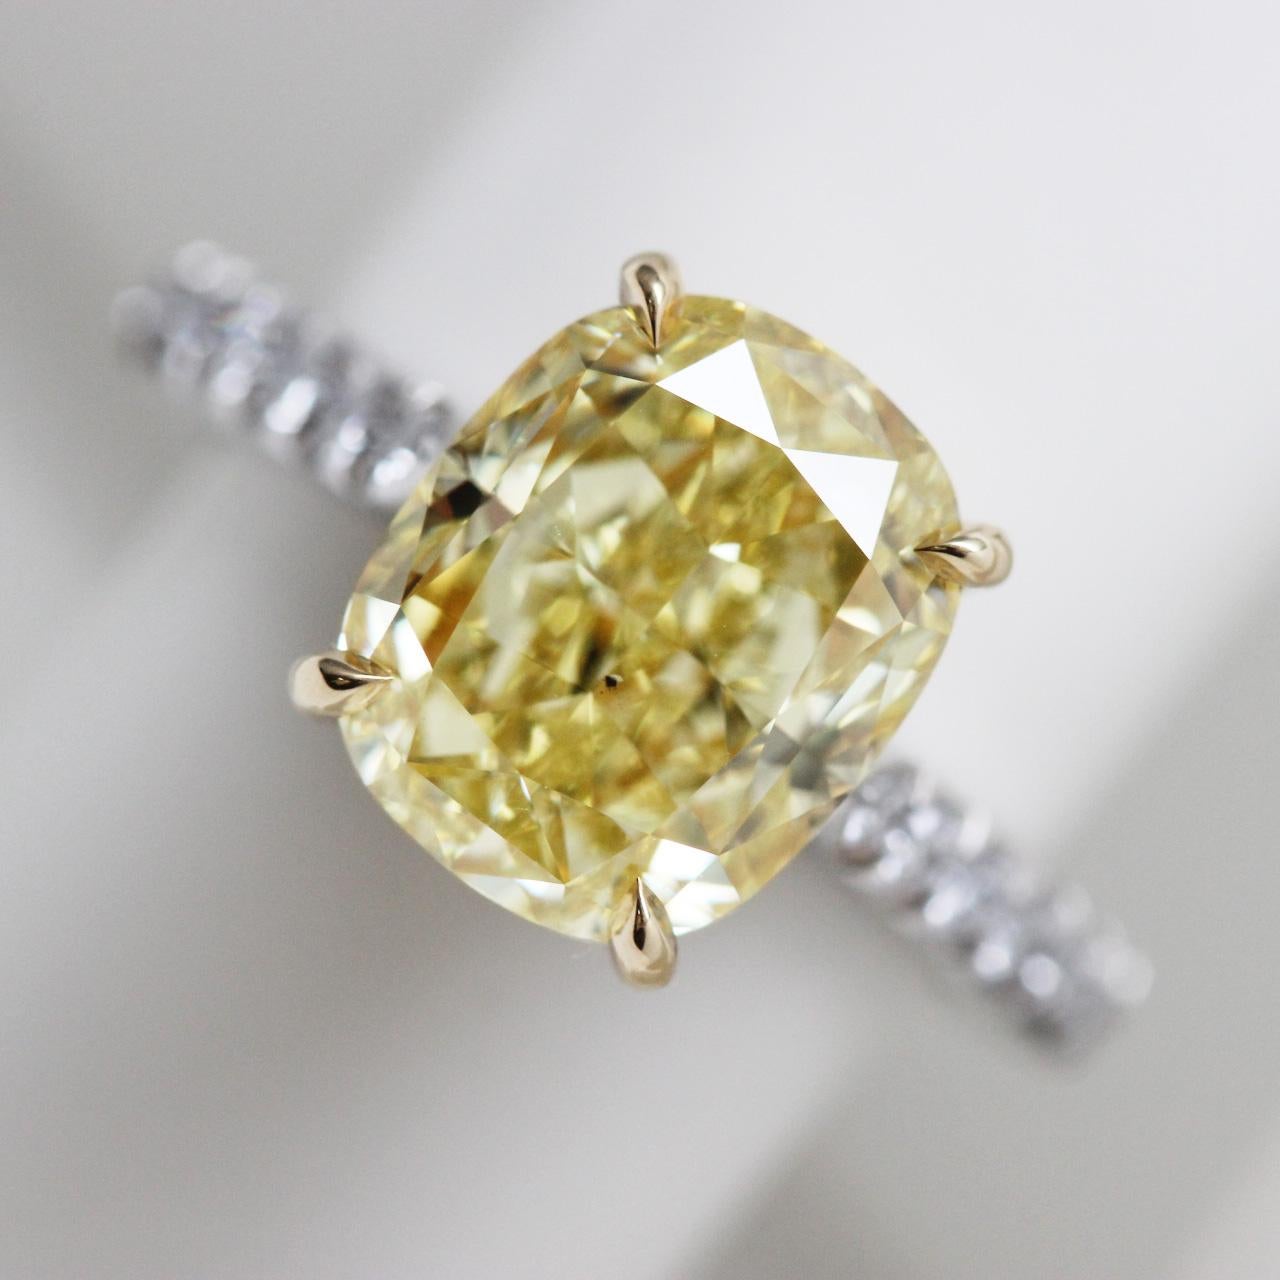 Diamant coussin de 5,26 carats de couleur naturelle jaune intense, monté sur bague en or jaune 18 carats et platine. Bague de fiançailles solitaire avec un diamant de couleur fantaisie taille coussin de plus de 5 carats certifié par la GIA. 

Vous